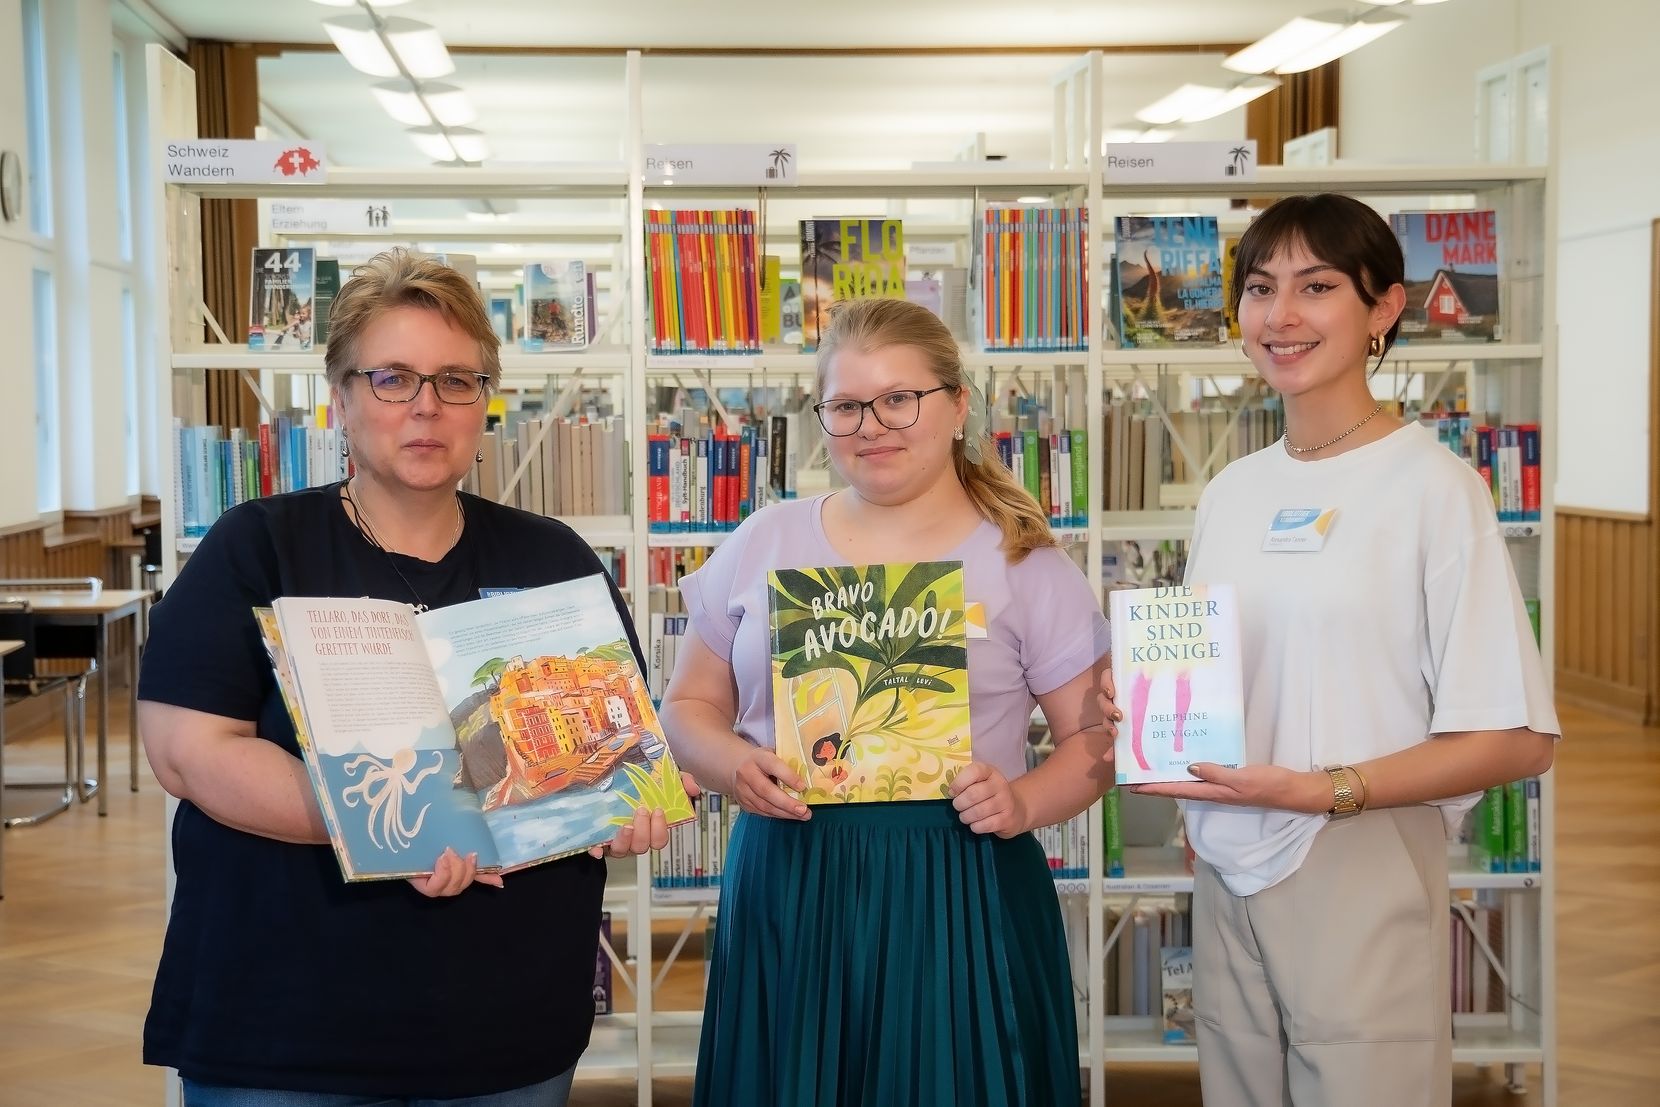 Drei Frauen stehen vor einem Bücherregal, jede hält ein Buch in den Händen. 